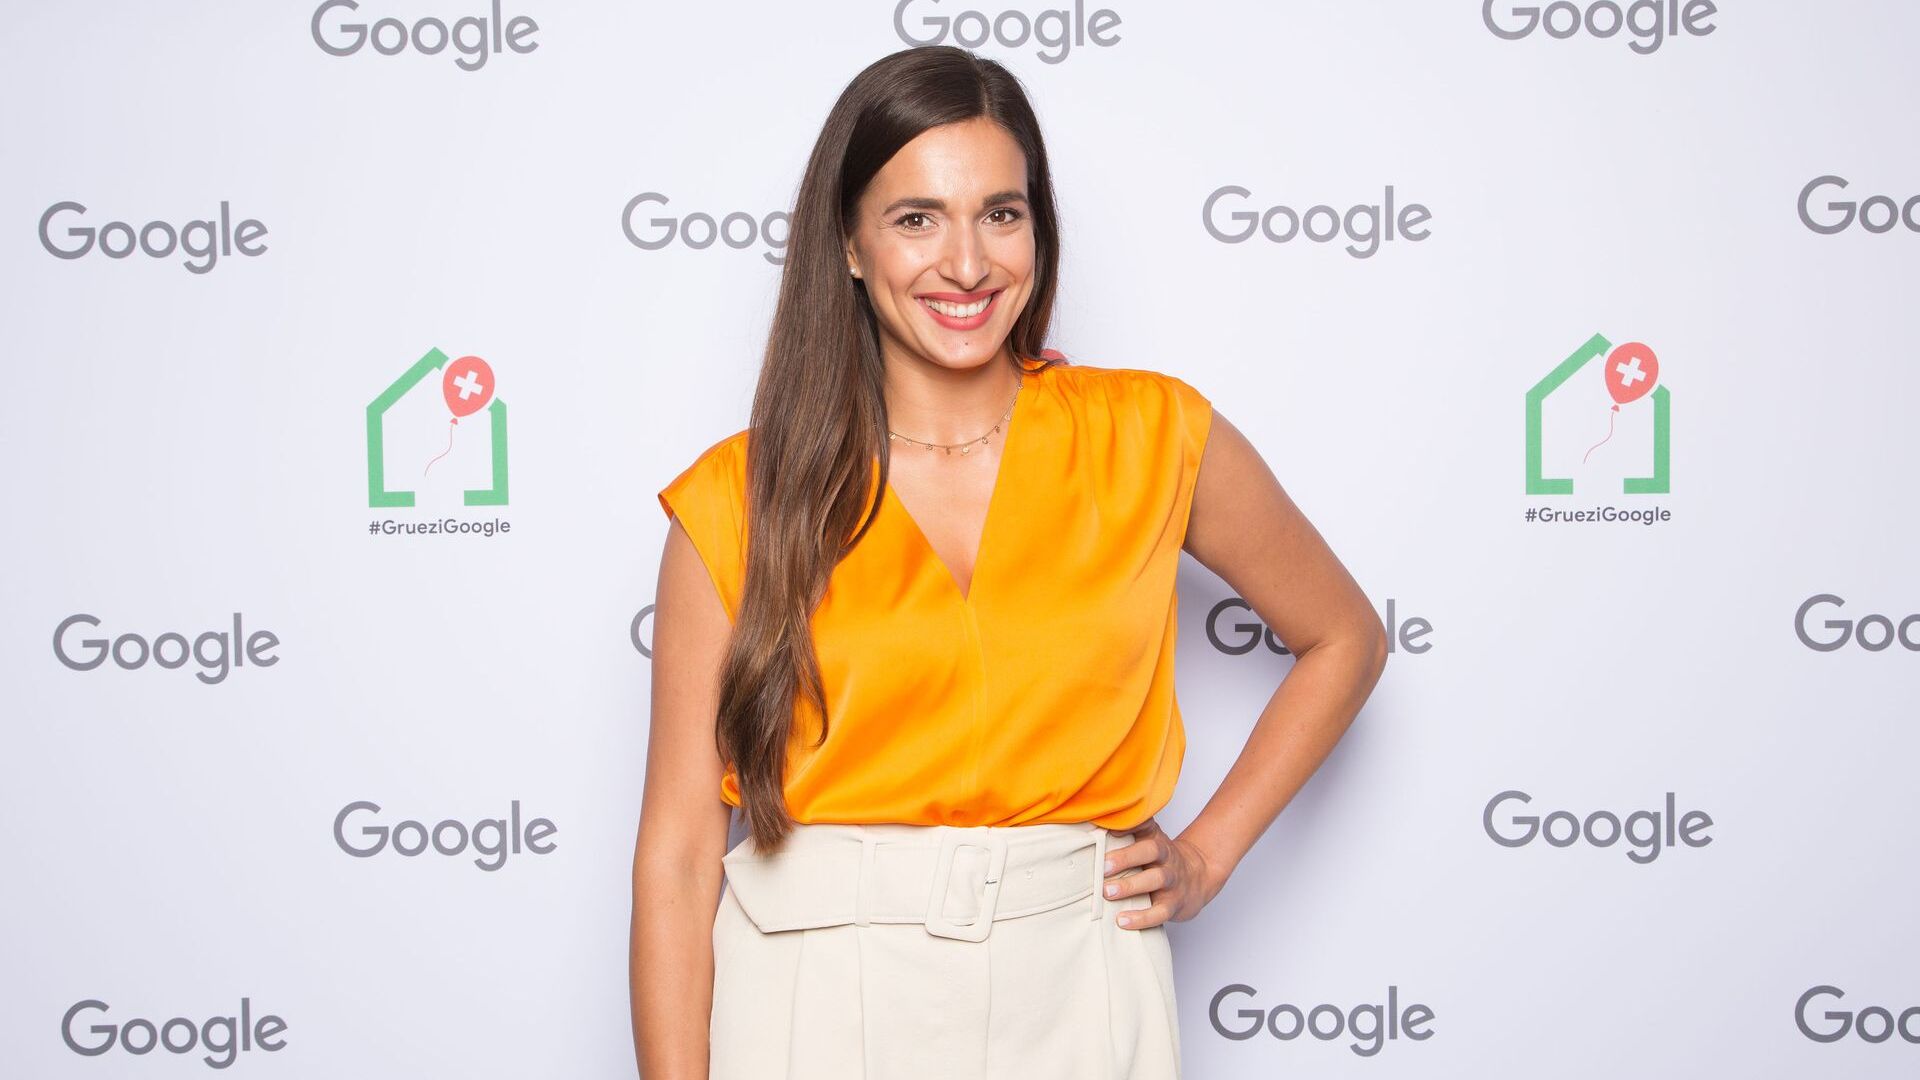 স্যালি'স ওয়েল্ট (ইউটিউব চ্যানেল) থেকে স্যালি জুরিখে 27 জুন 2022-এ নতুন Google ক্যাম্পাস ইউরোপালির আনুষ্ঠানিক উদ্বোধনে অংশ নিয়েছিলেন